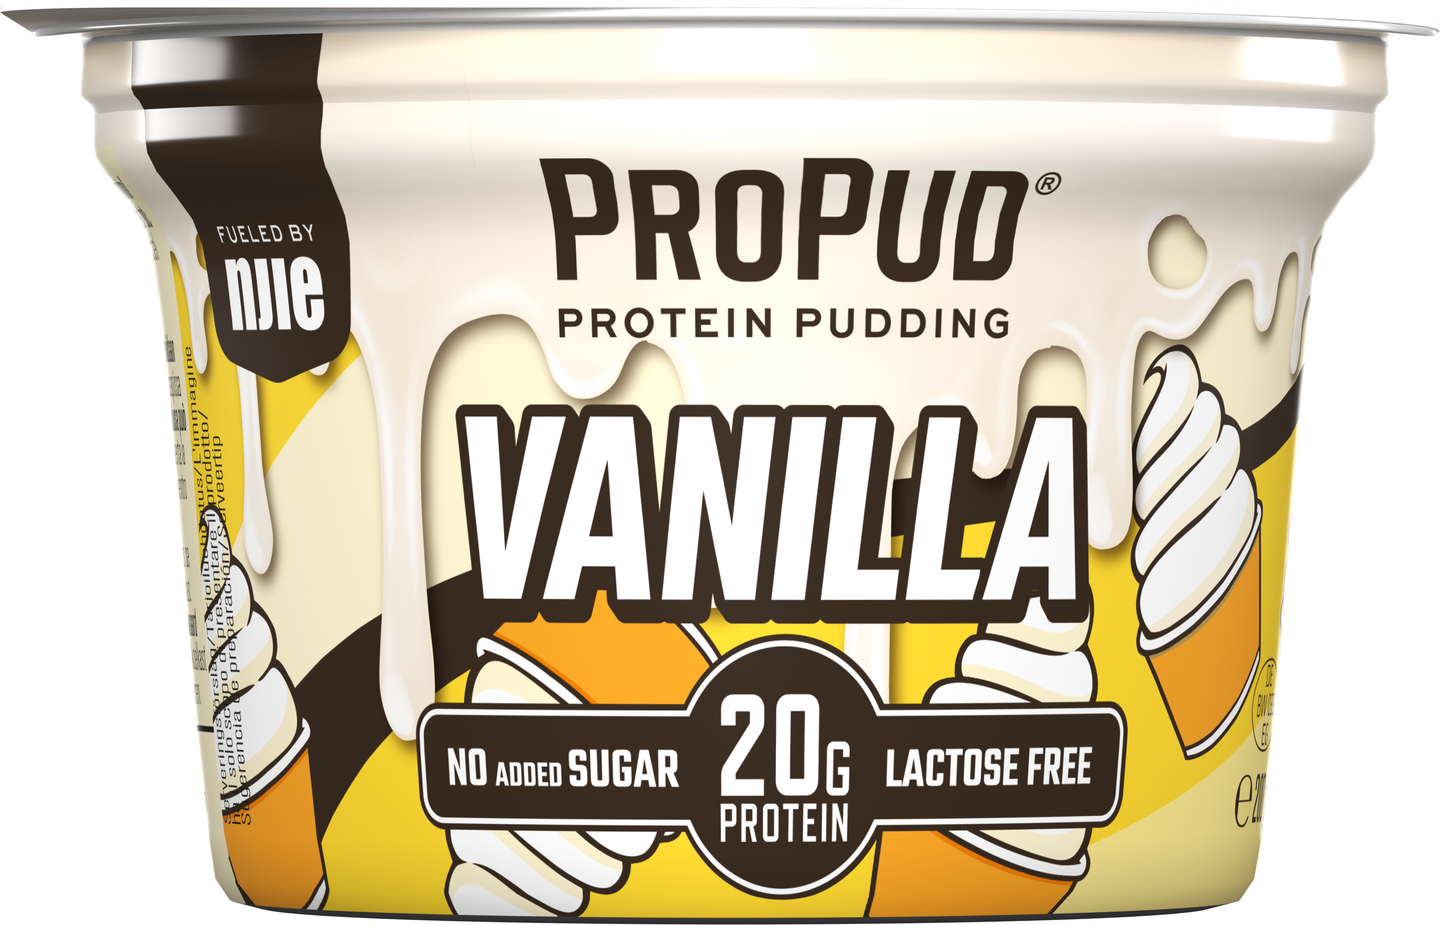 Njie ProPud proteiinivanukas 200g vanilja laktoositon